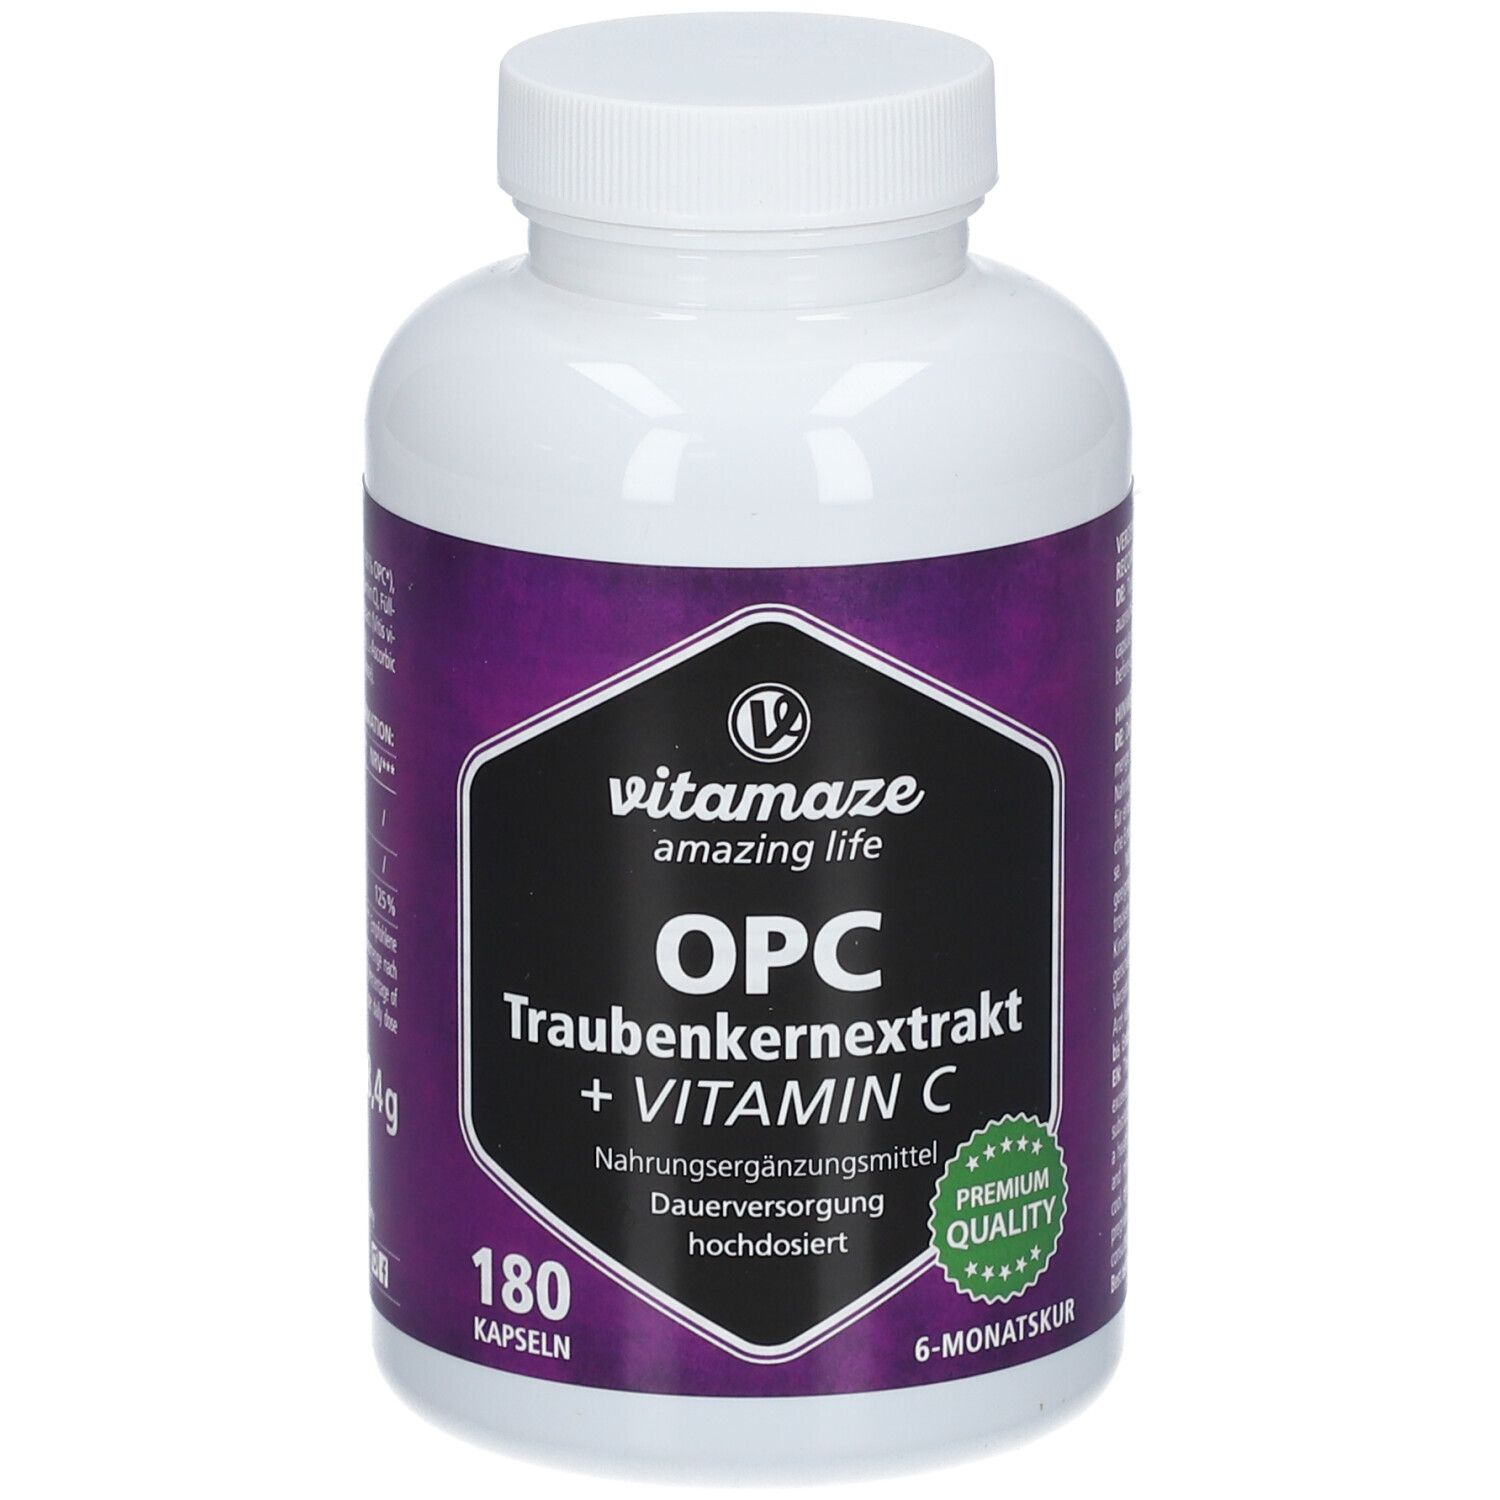 Vitamaze OPC TRAUBENKERNEXTRAKT hochdosiert + Vitamin C